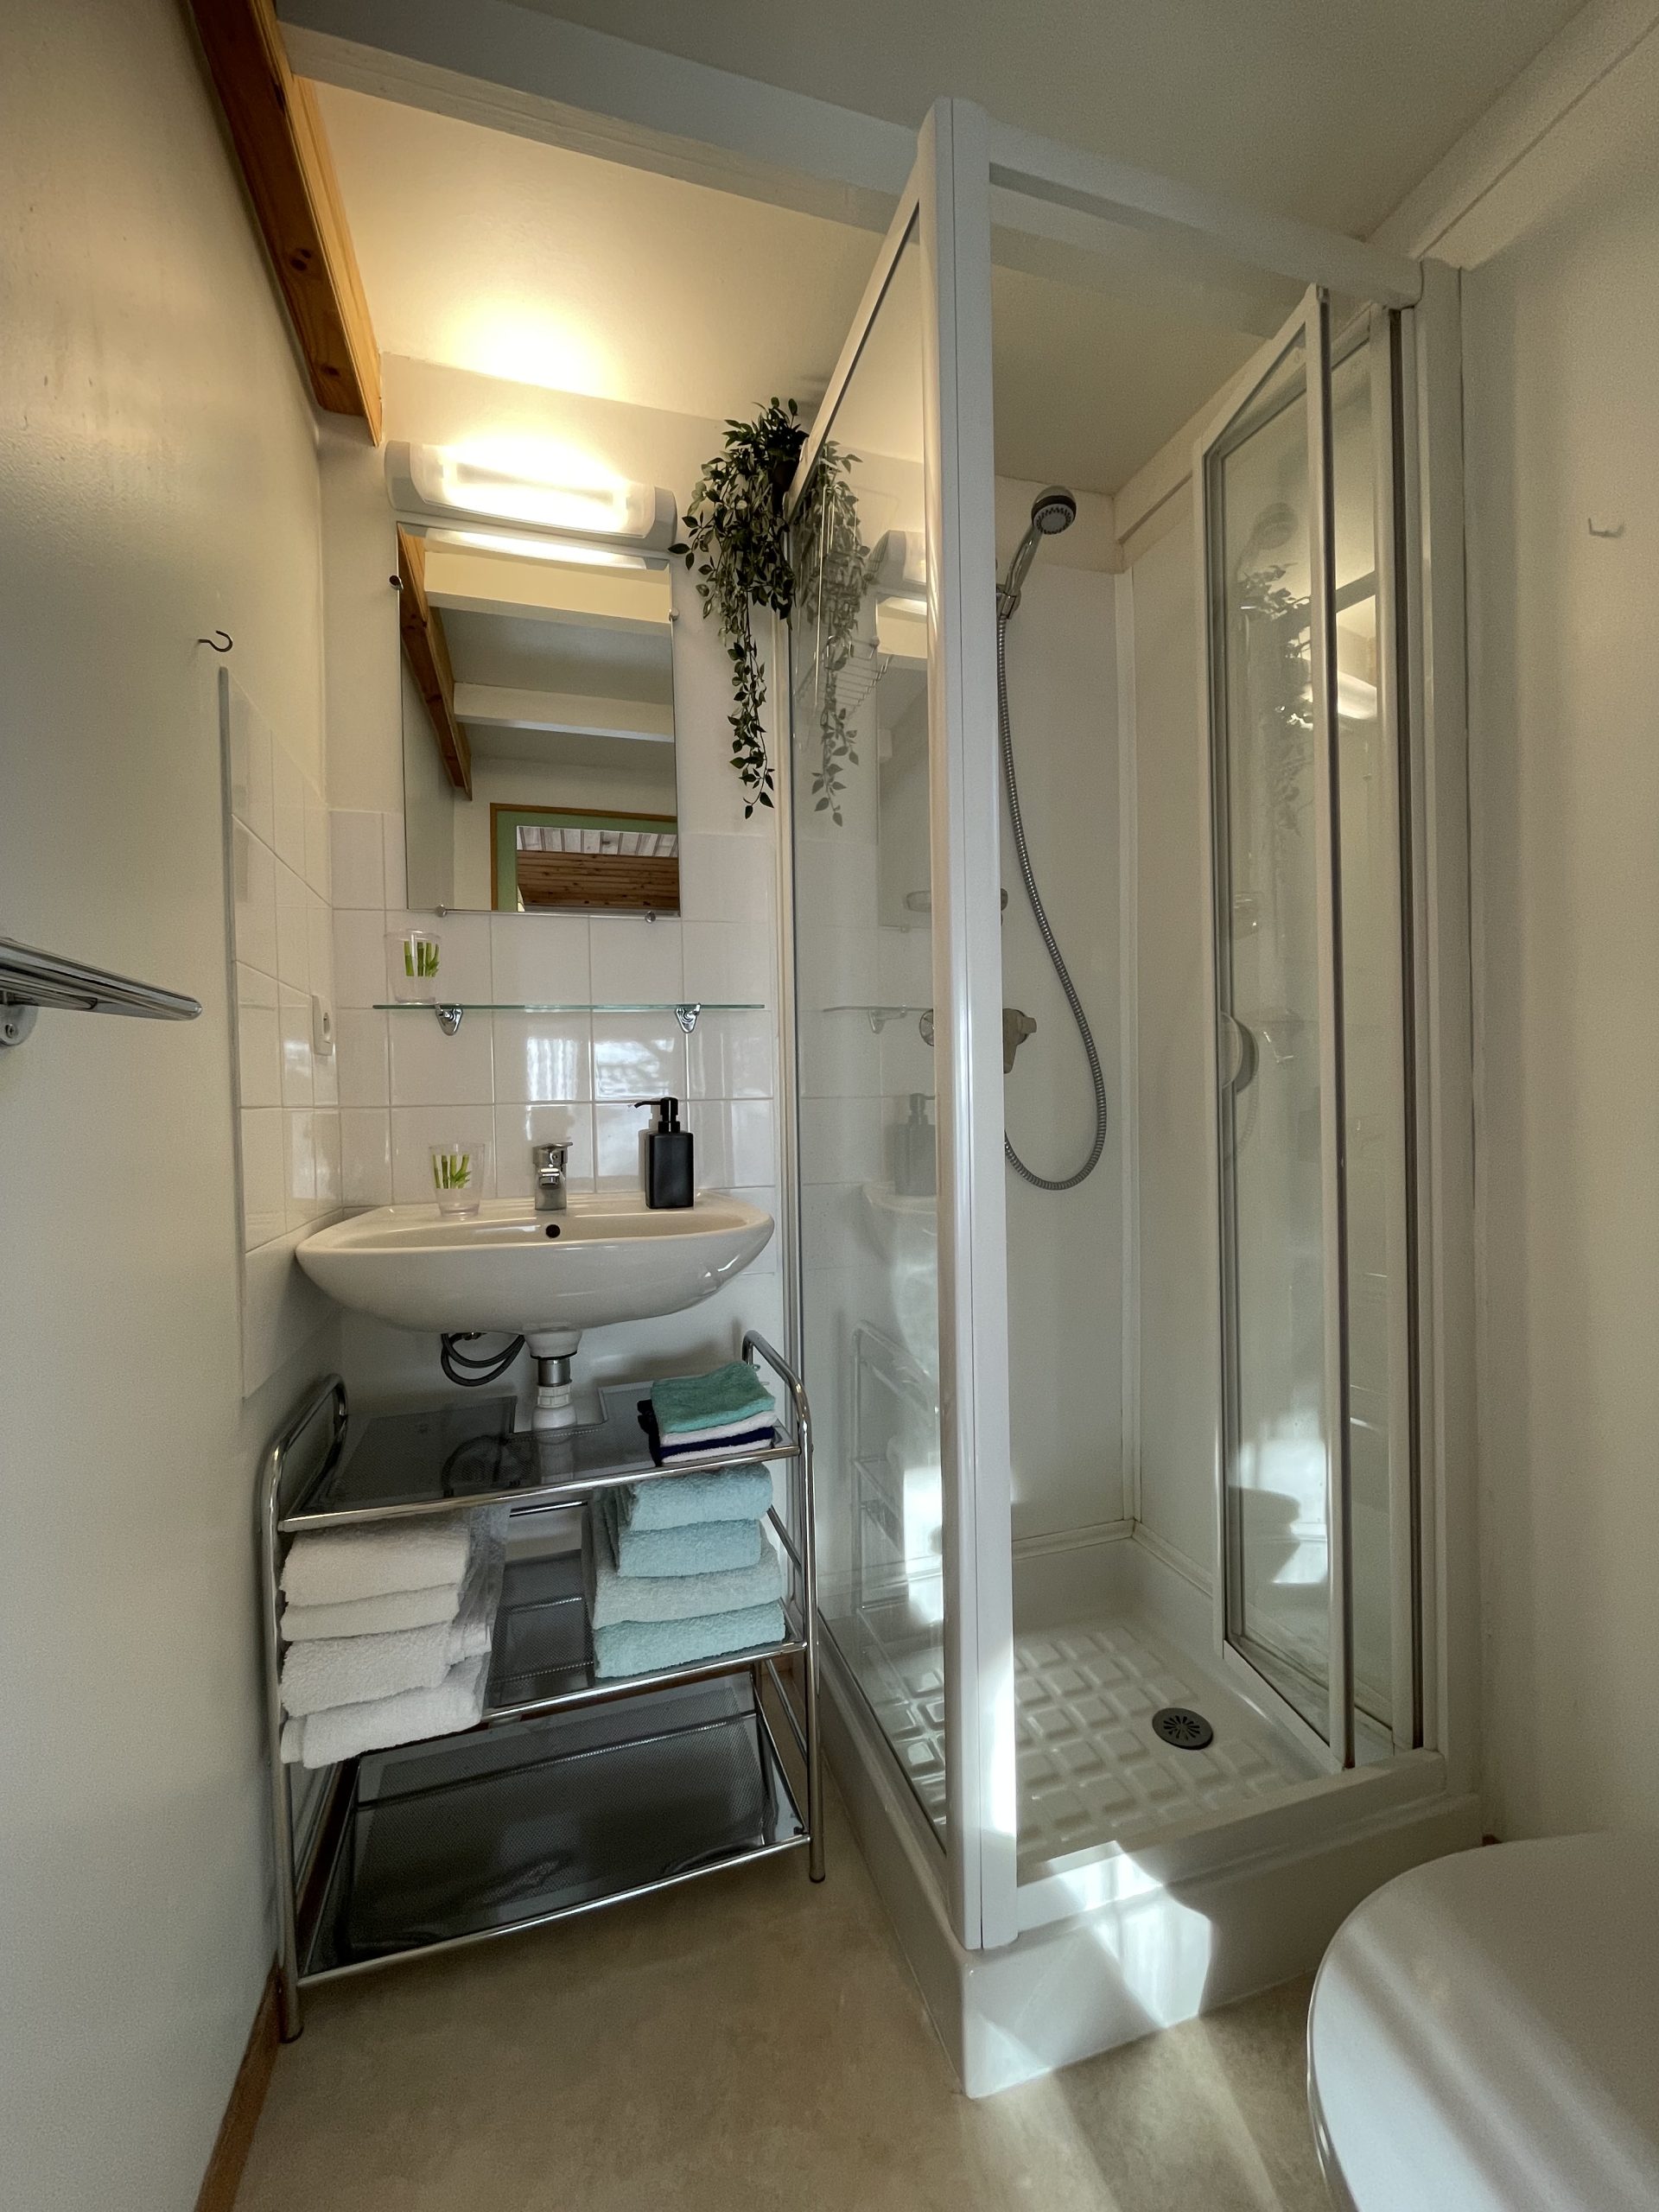 Gîte Chalet Drôme provençale. Salle de douche avec WC